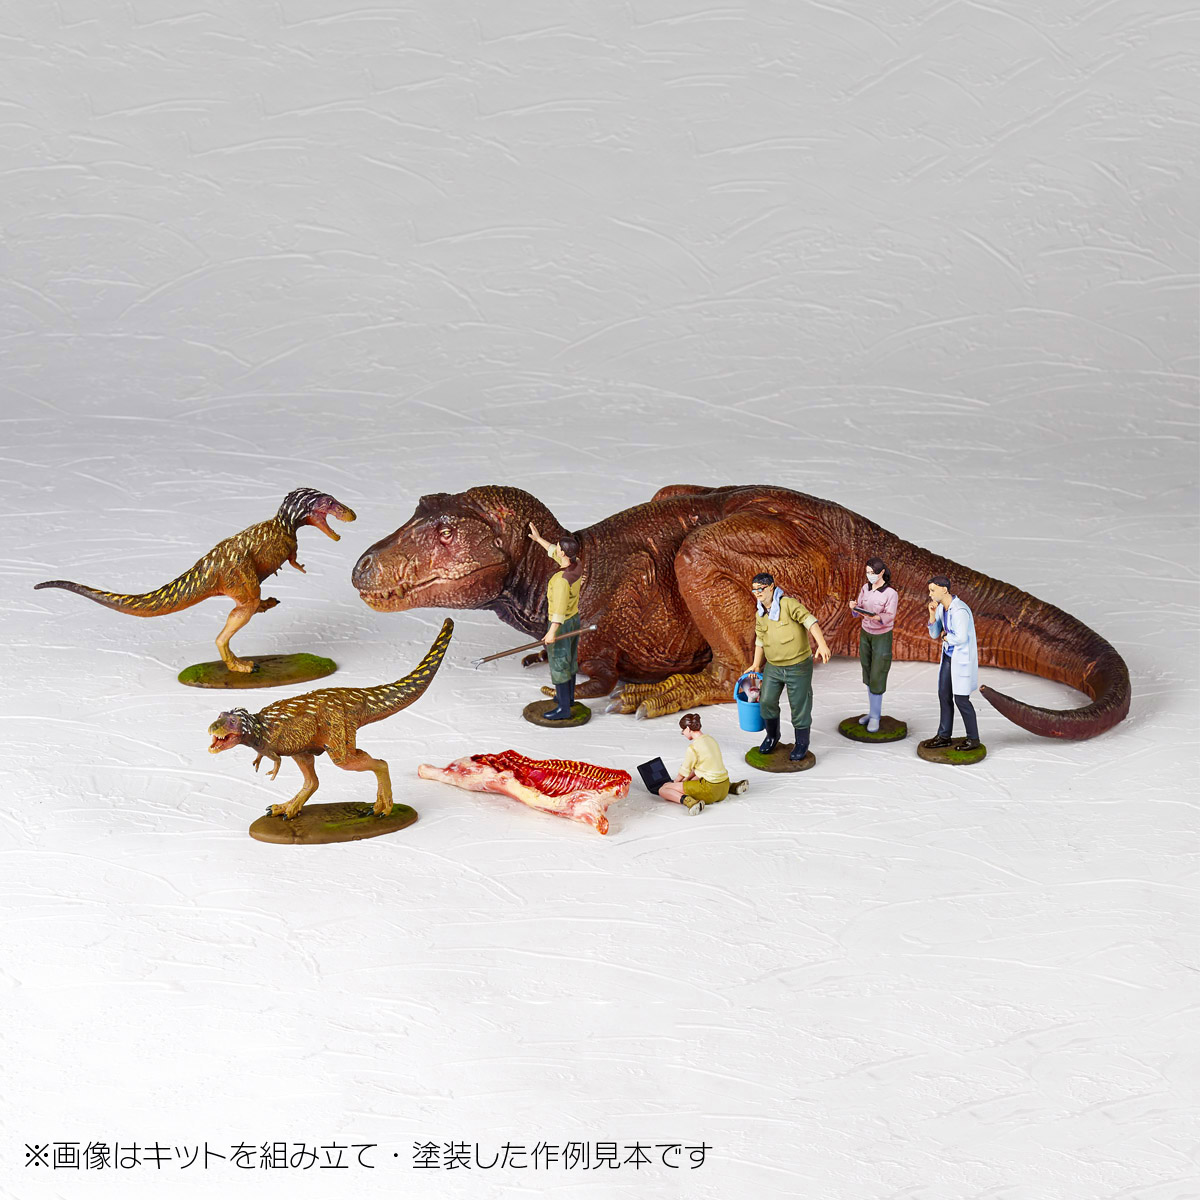 恐竜 | フィギュアの造形企画製作、販売を行う株式会社海洋堂